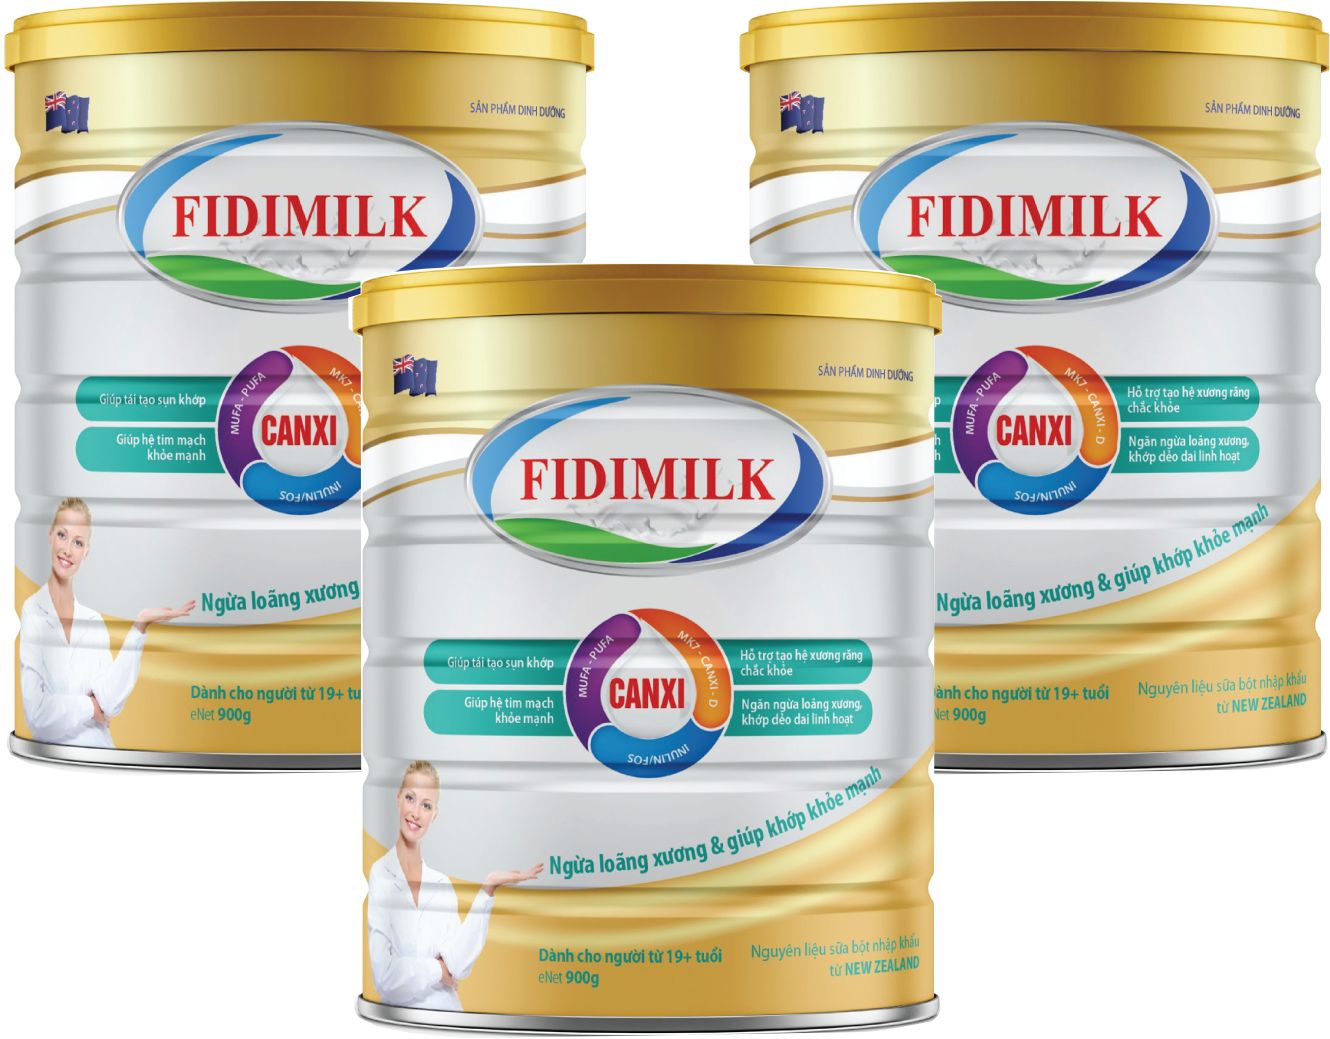 Bộ 3 lon Sữa bột FIDIMILK CANXI lon 900g - Sản phẩm ngăn ngừa loãng xương.